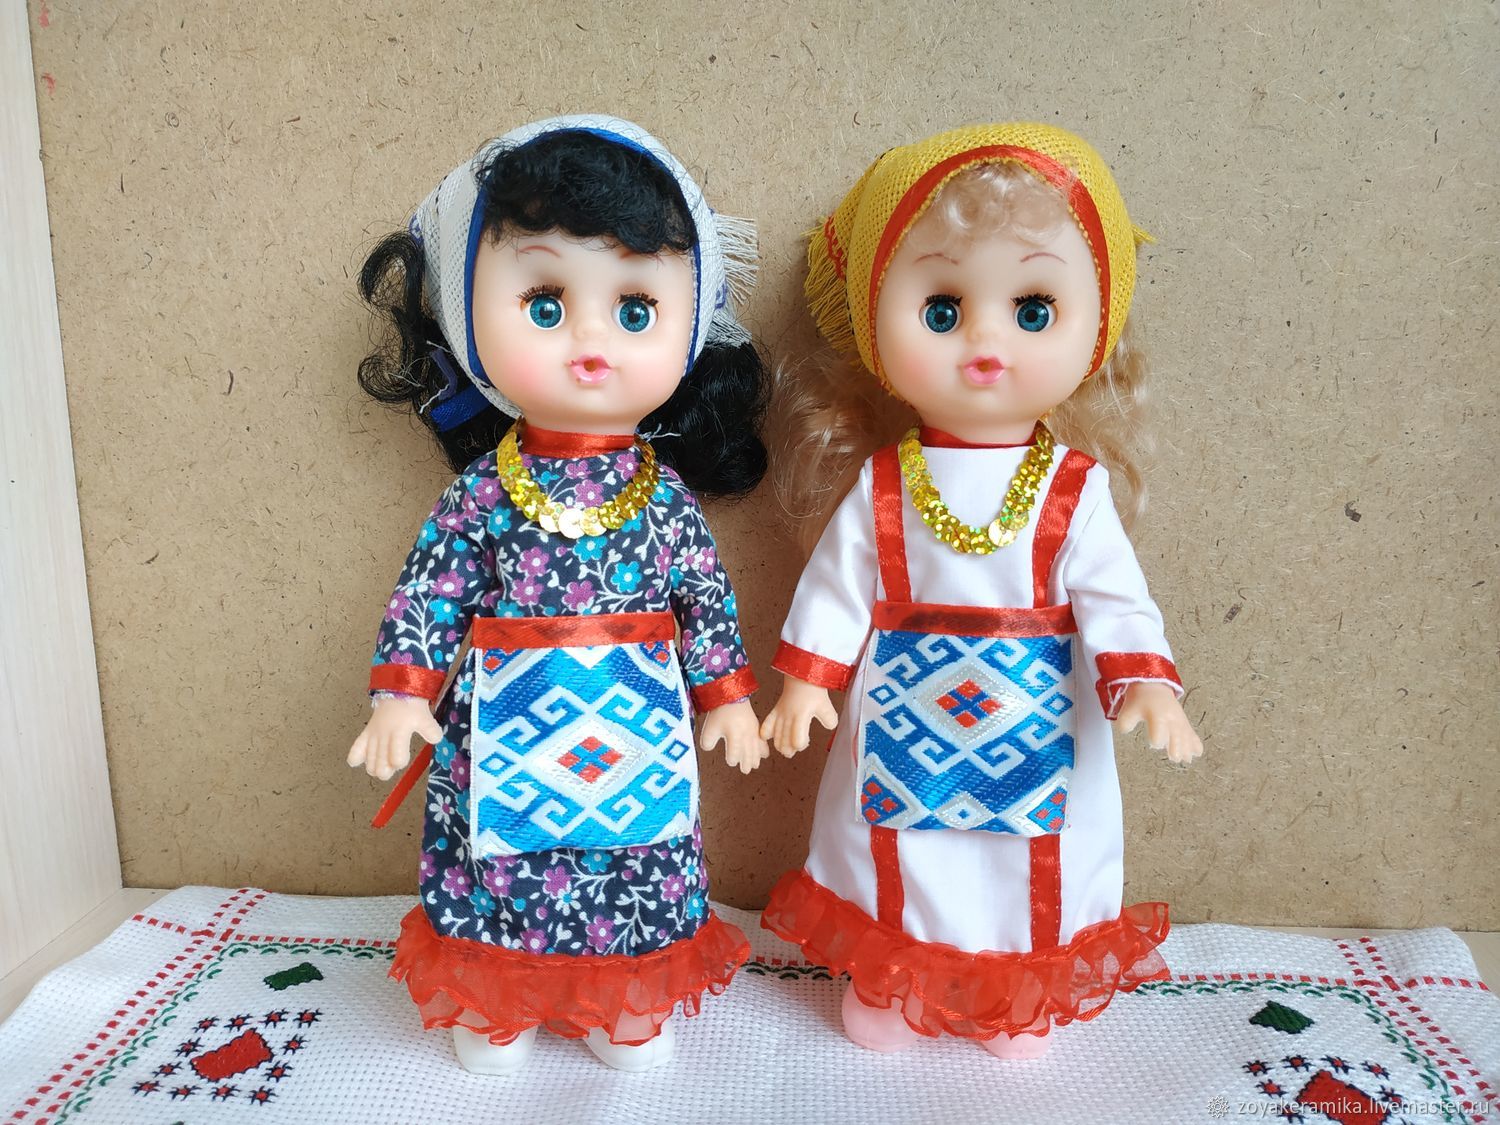 Купить кукол в национальных костюмах. Национальные куклы. Чувашские куклы. Кукла в чувашском национальном костюме. Чувашский наряд для куклы.